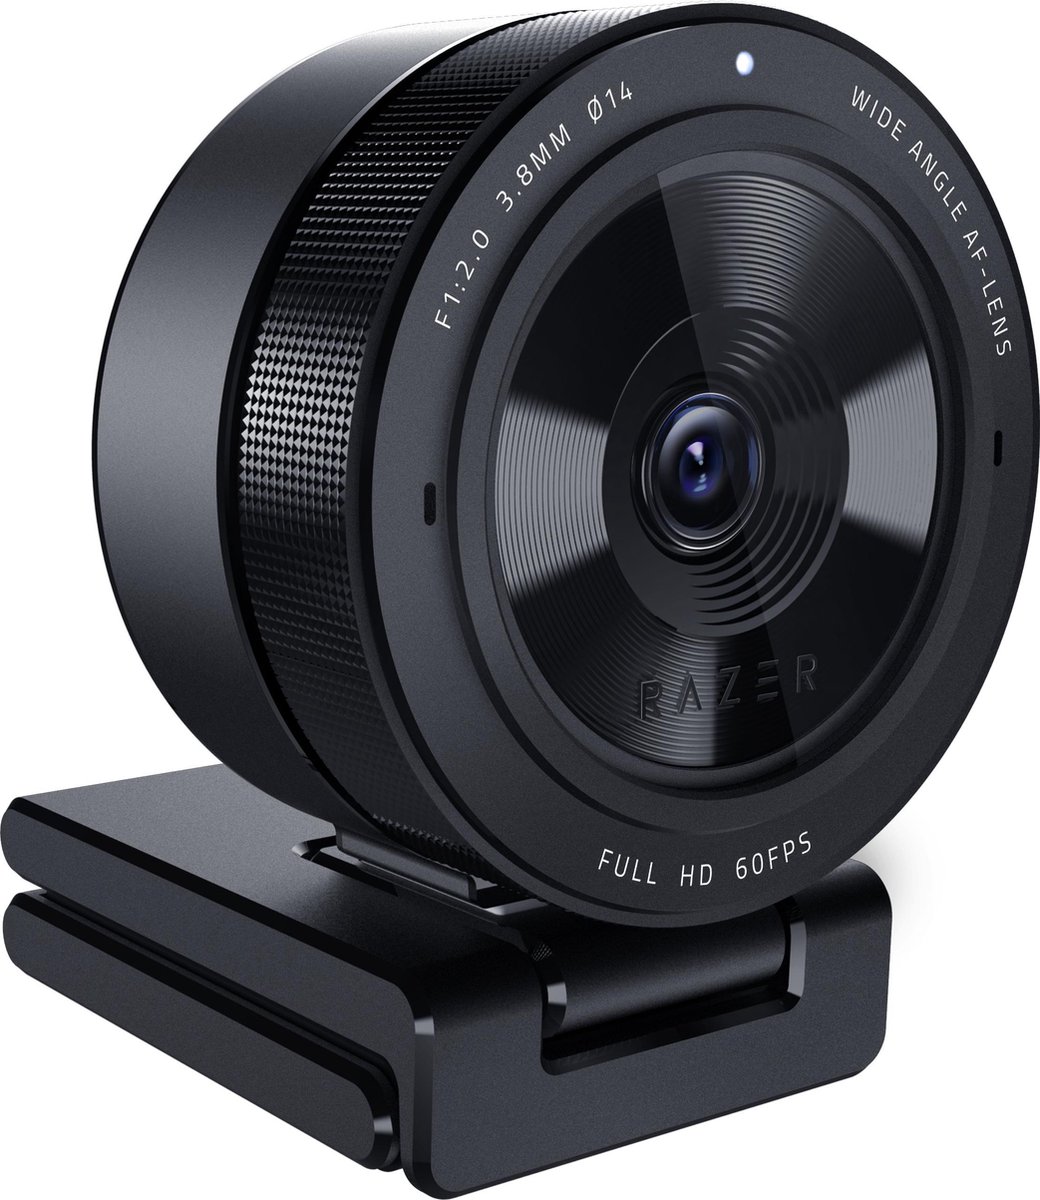 Razer Kiyo Pro - Streaming Camera / Webcam